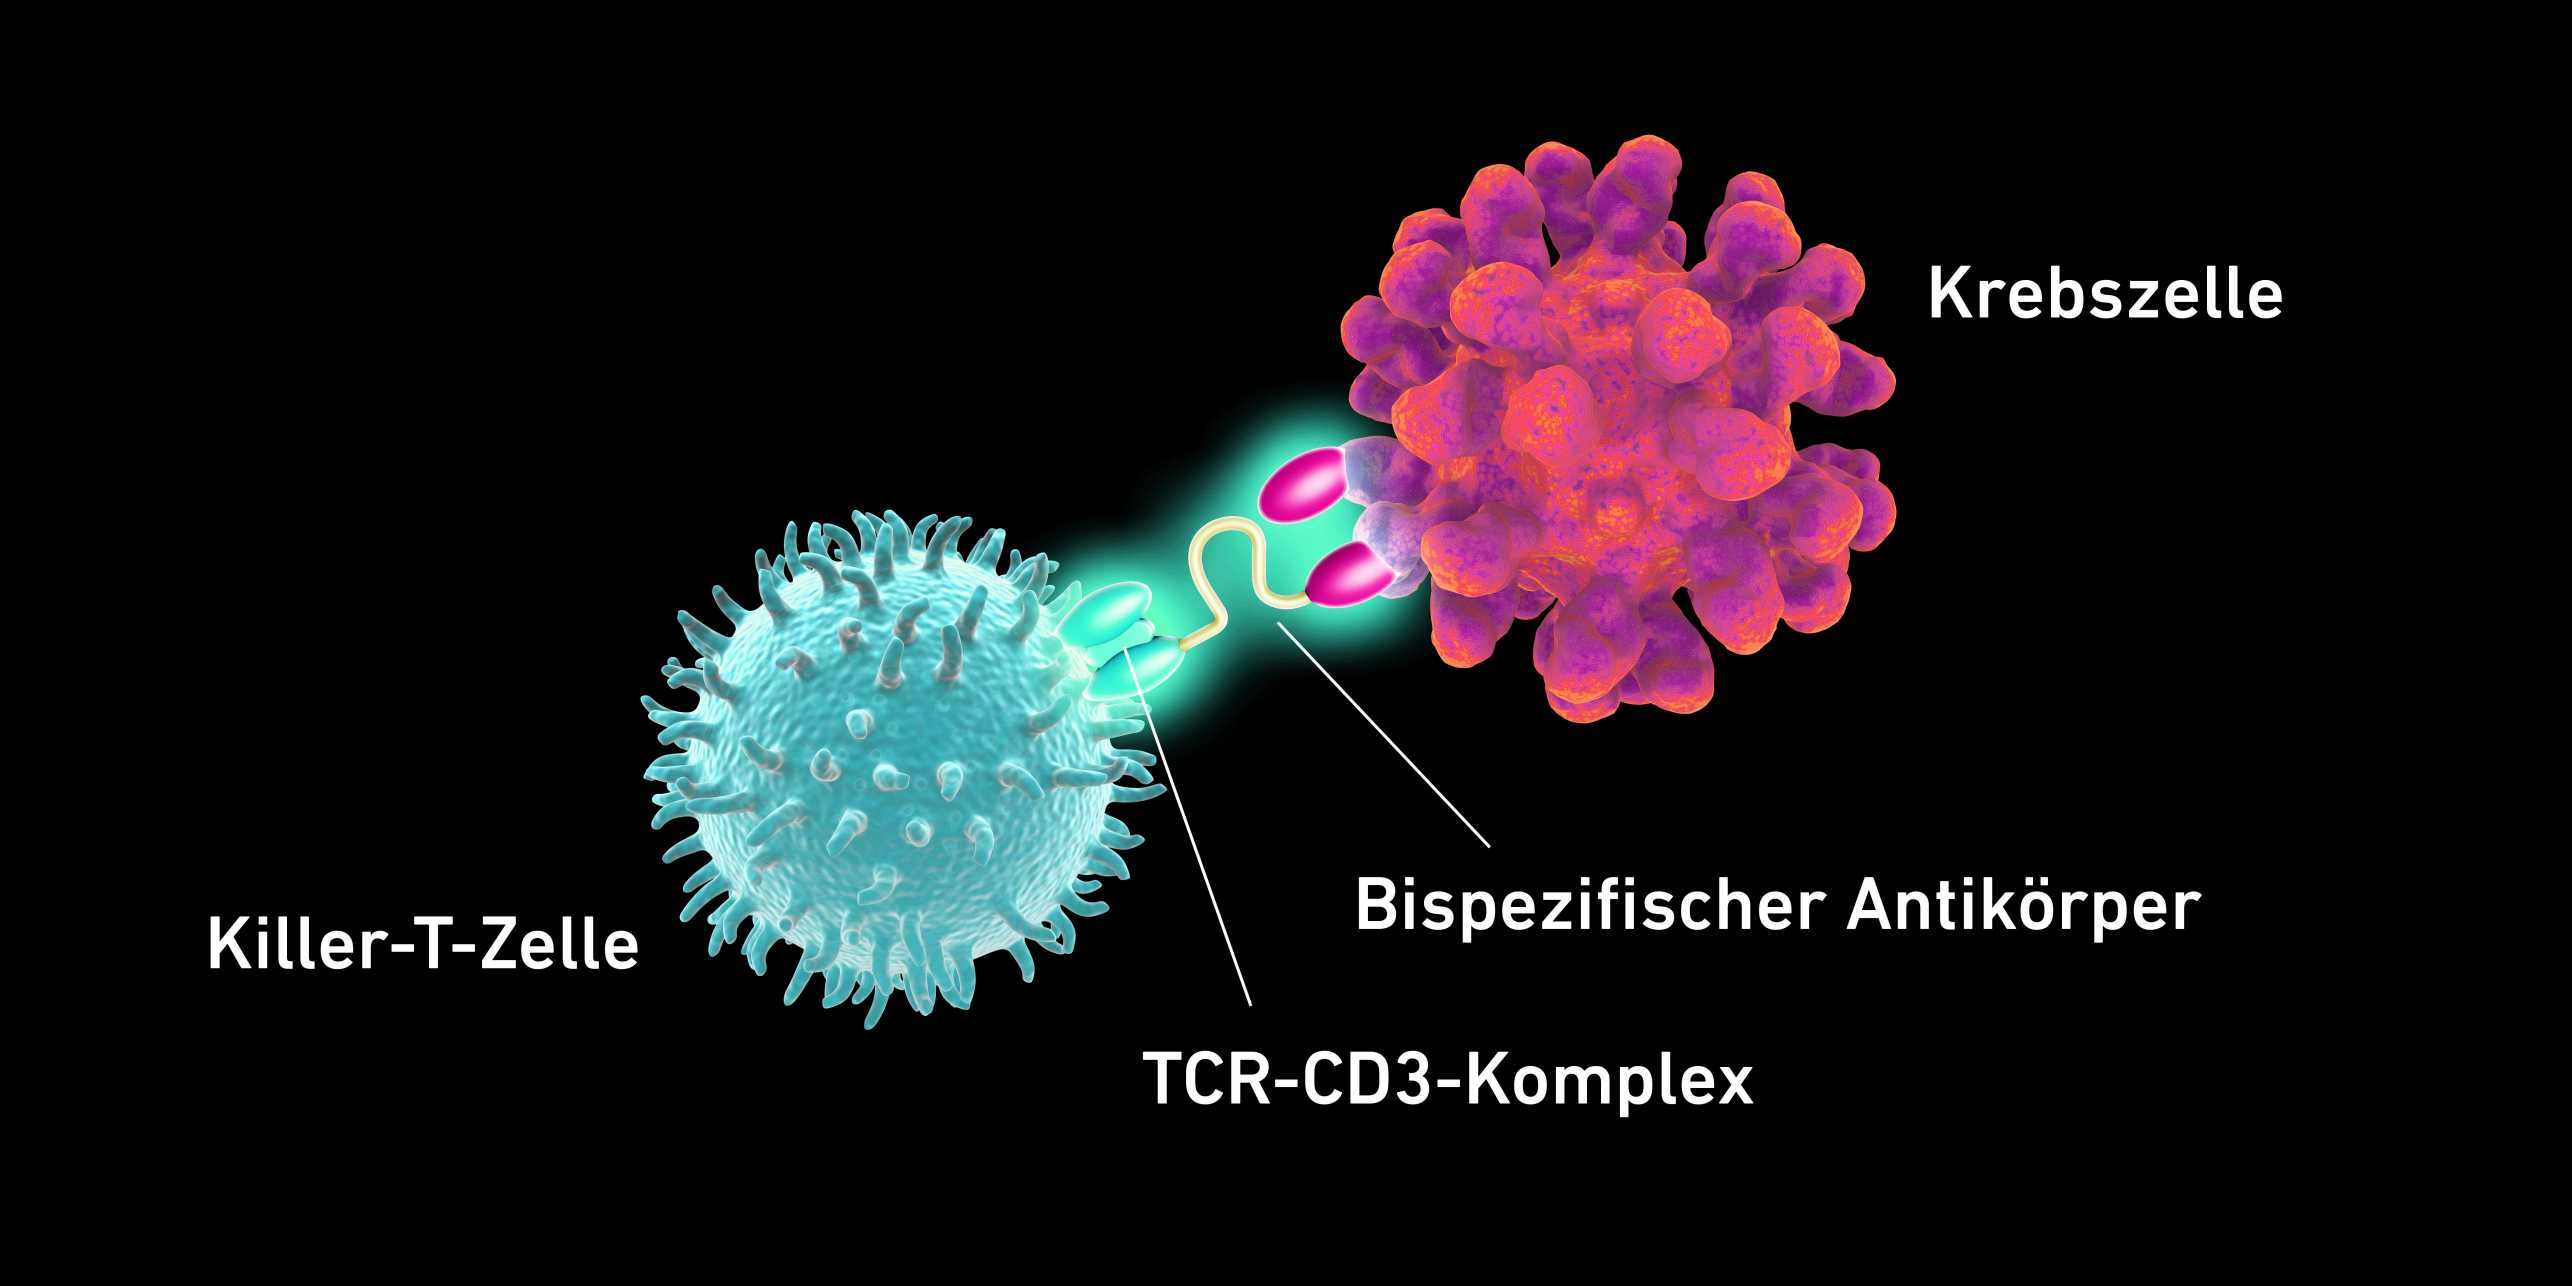 Vergrösserte Ansicht: Grafik, die den Zusammenhang zwischen der Killer-T-Zelle und der Krebszelle zeigt